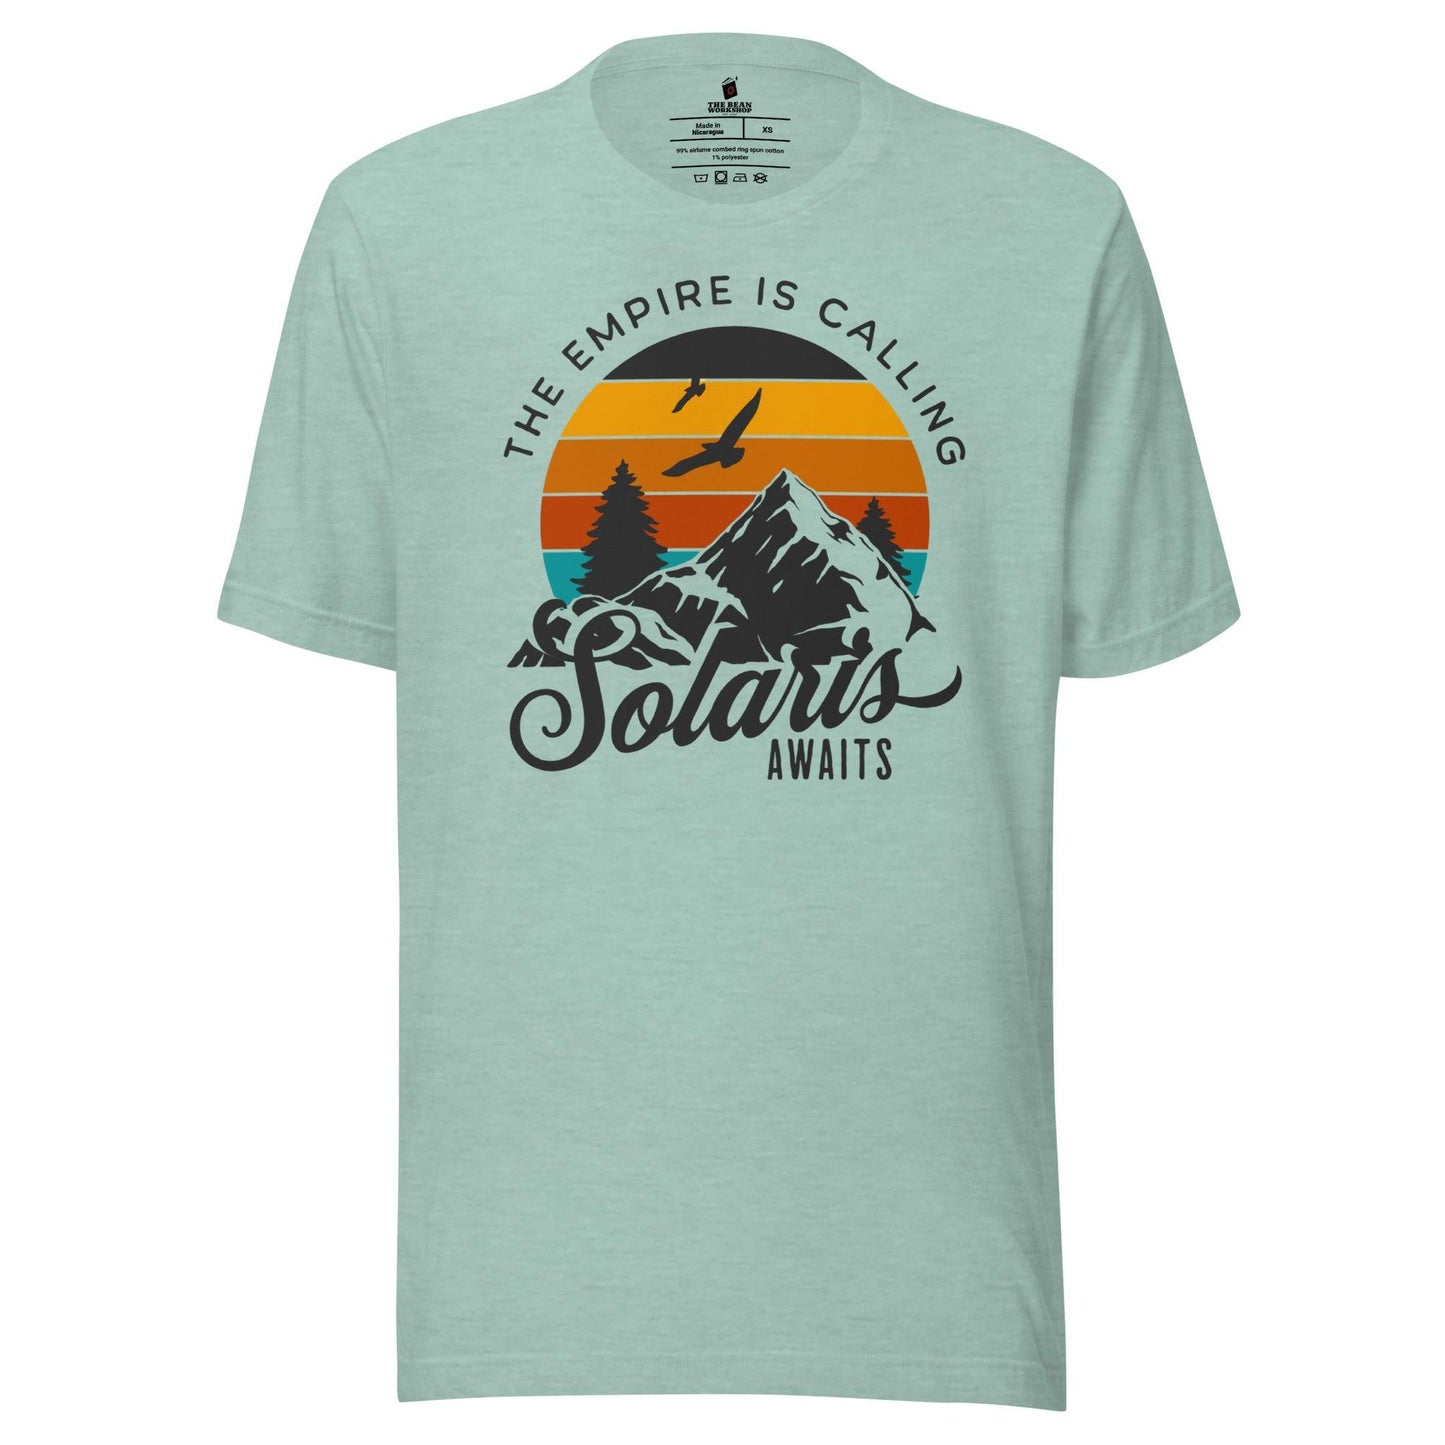 Solaris Awaits T-Shirt - The Bean Workshop - air awakens, elise kova, t-shirt